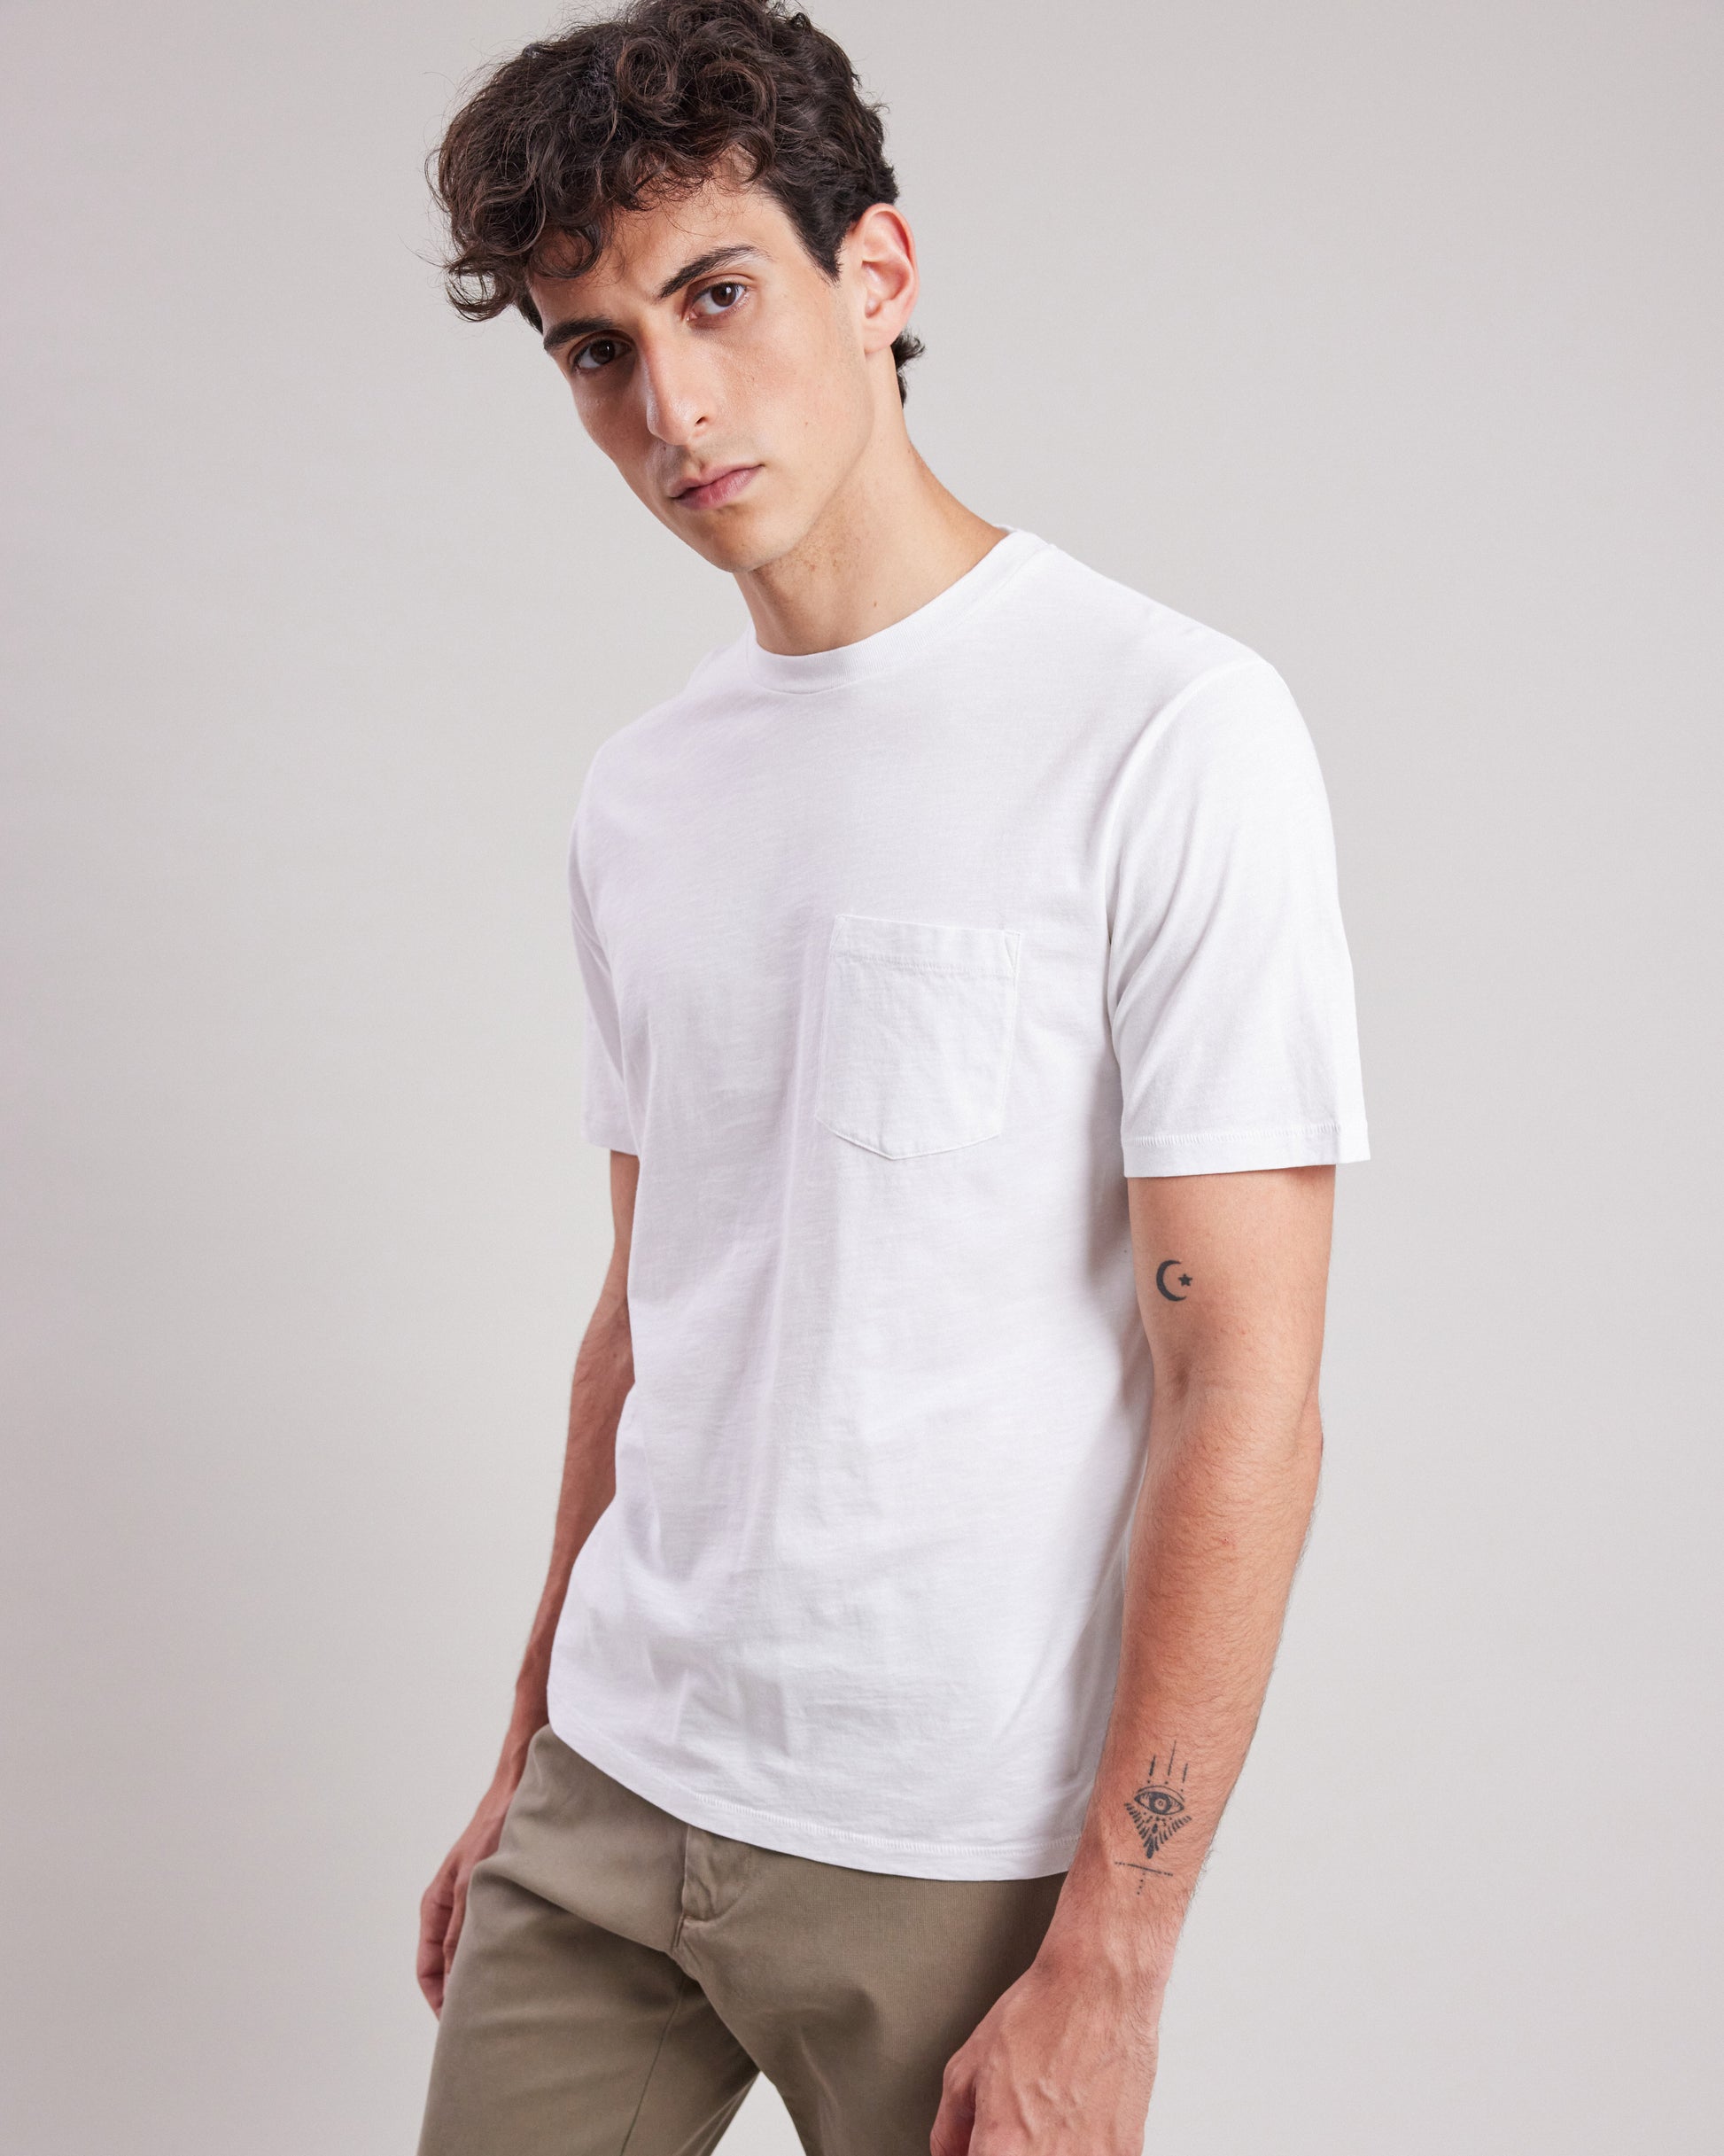 Tee shirt Homme en coton slub Blanc Pocket BC64302-01